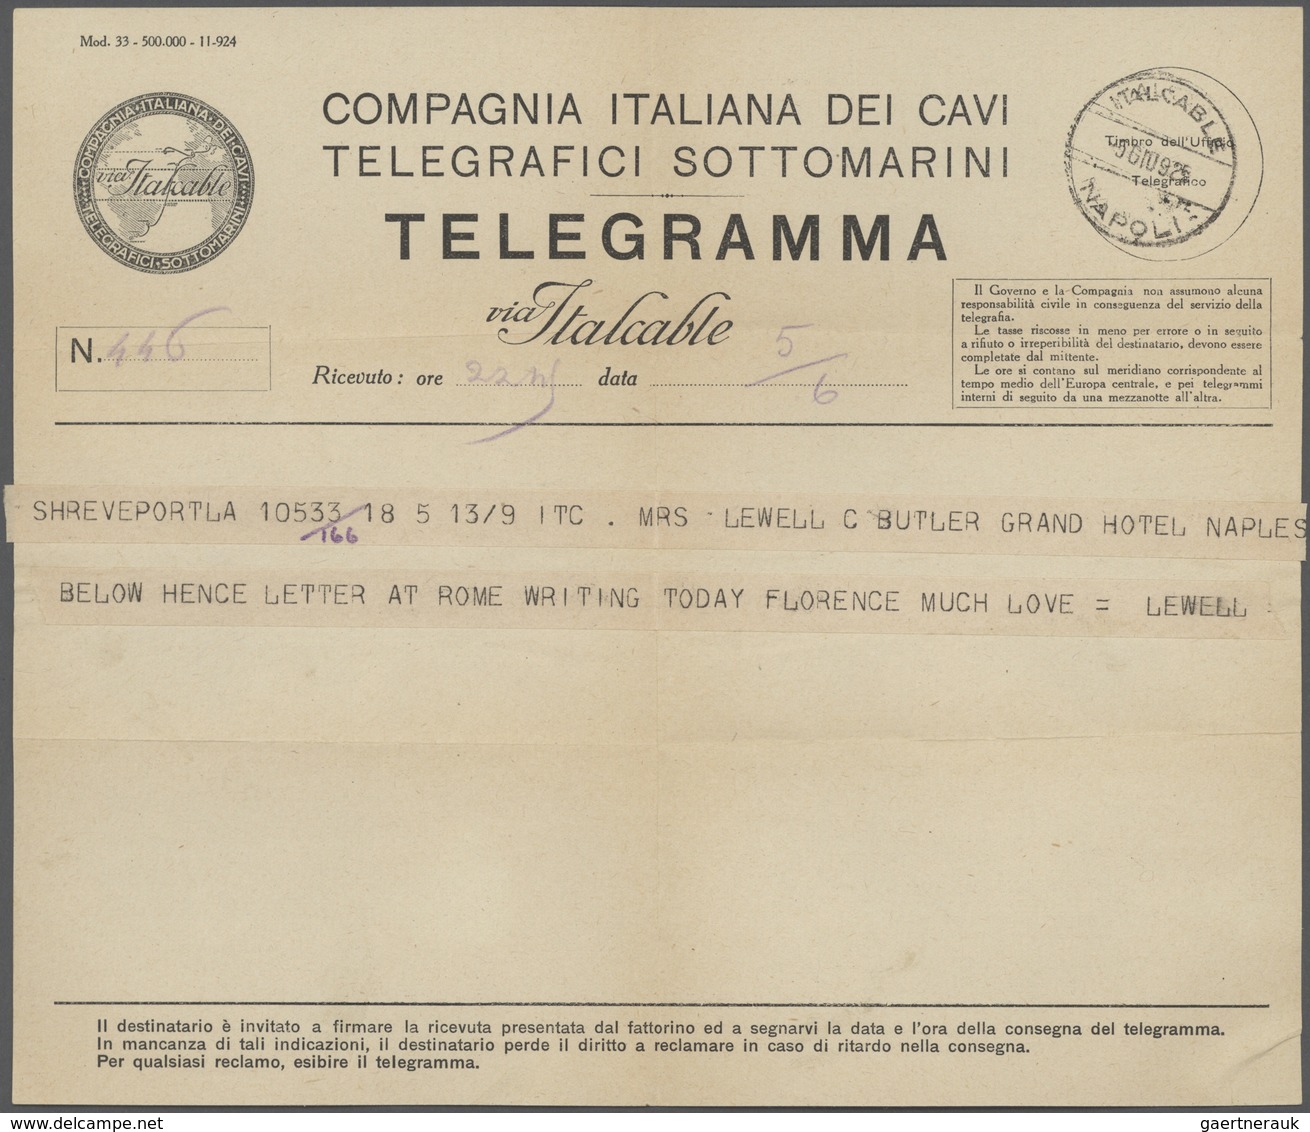 Italien: 1862/1980 (ca.), Telegrafie, Sammlung mit rund 40 Belegen, ab Formular für die Aufgabe eine